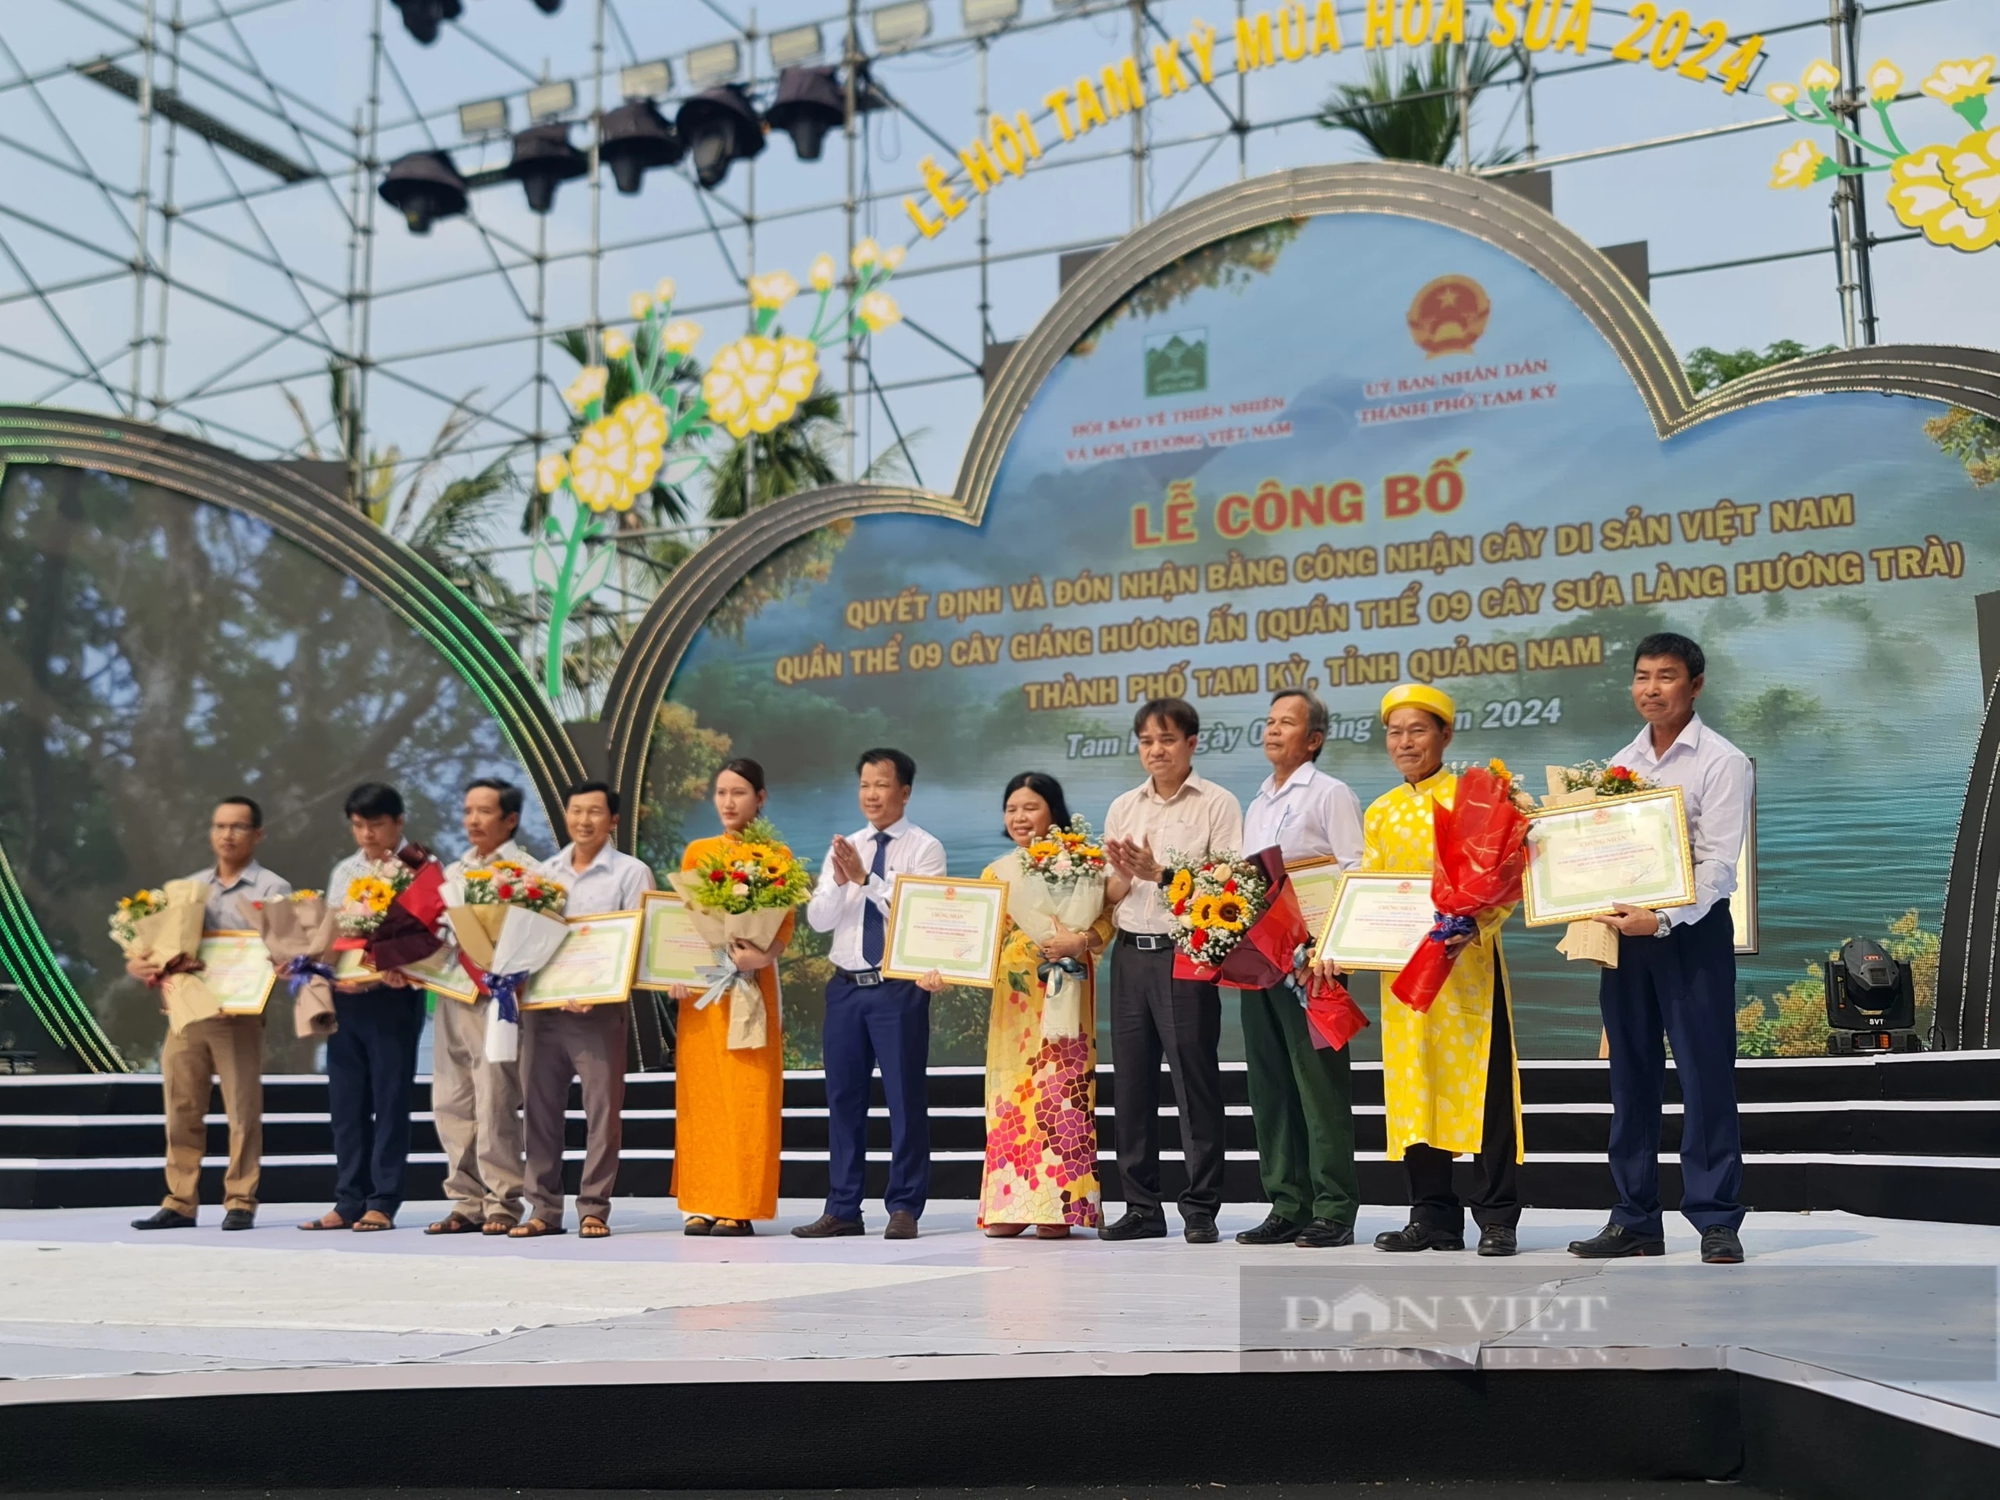 9 cây sưa hàng trăm năm tuổi ở Quảng Nam được công nhận là Cây Di sản Việt Nam- Ảnh 7.